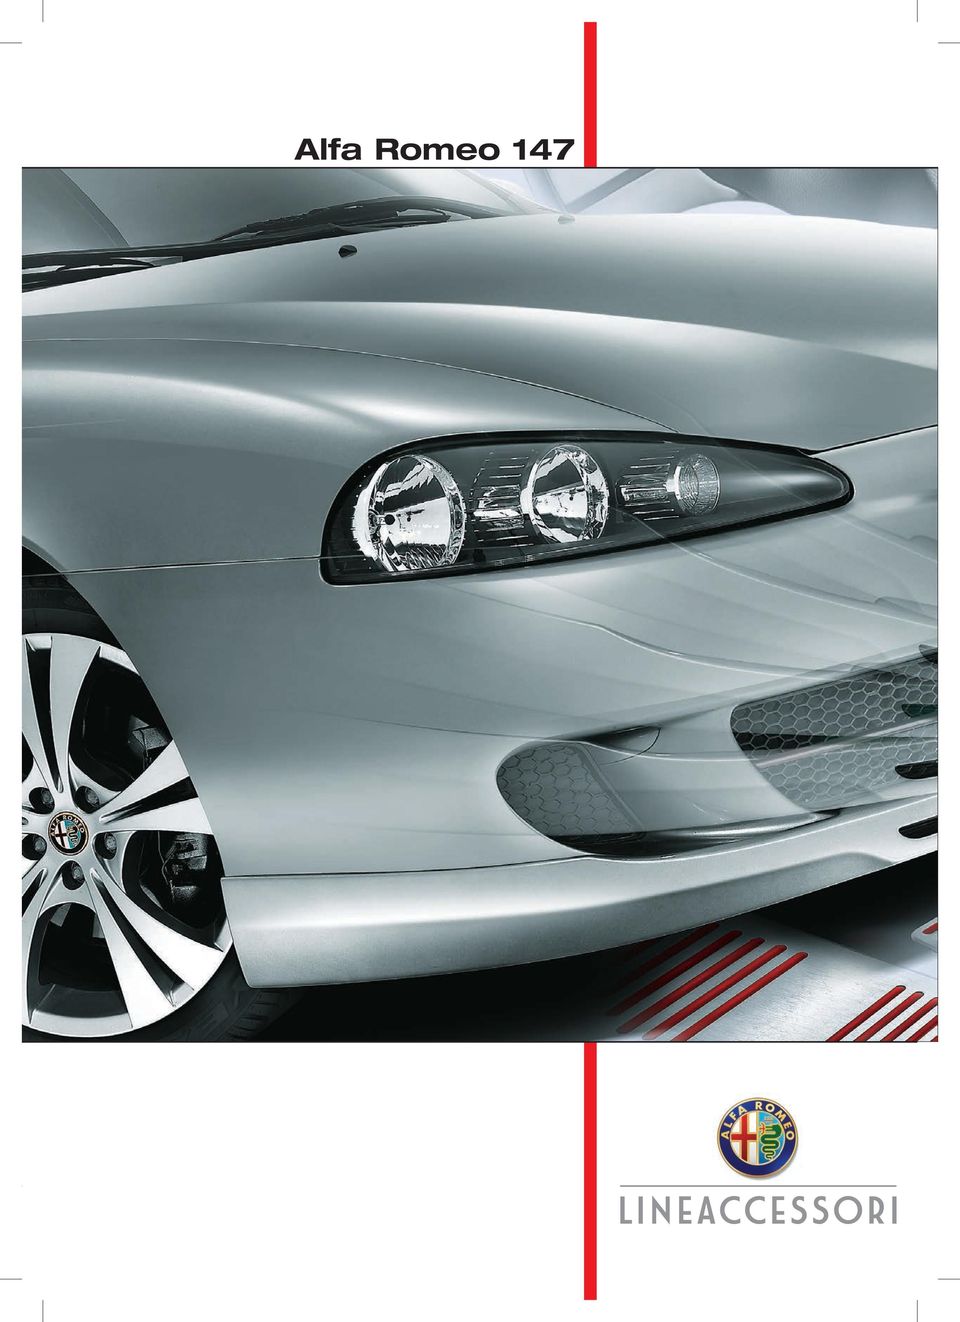 Optikai tuning OLDALSÓ KÜSZÖB SPOILER ** ELSŐ SPOILER ** * OLDALSÓ  LÉGTERELŐK AZ ELSŐ ABLAKOKRA. Kizárólag Alfa Romeo 147 (2004 évjárat) - PDF  Ingyenes letöltés